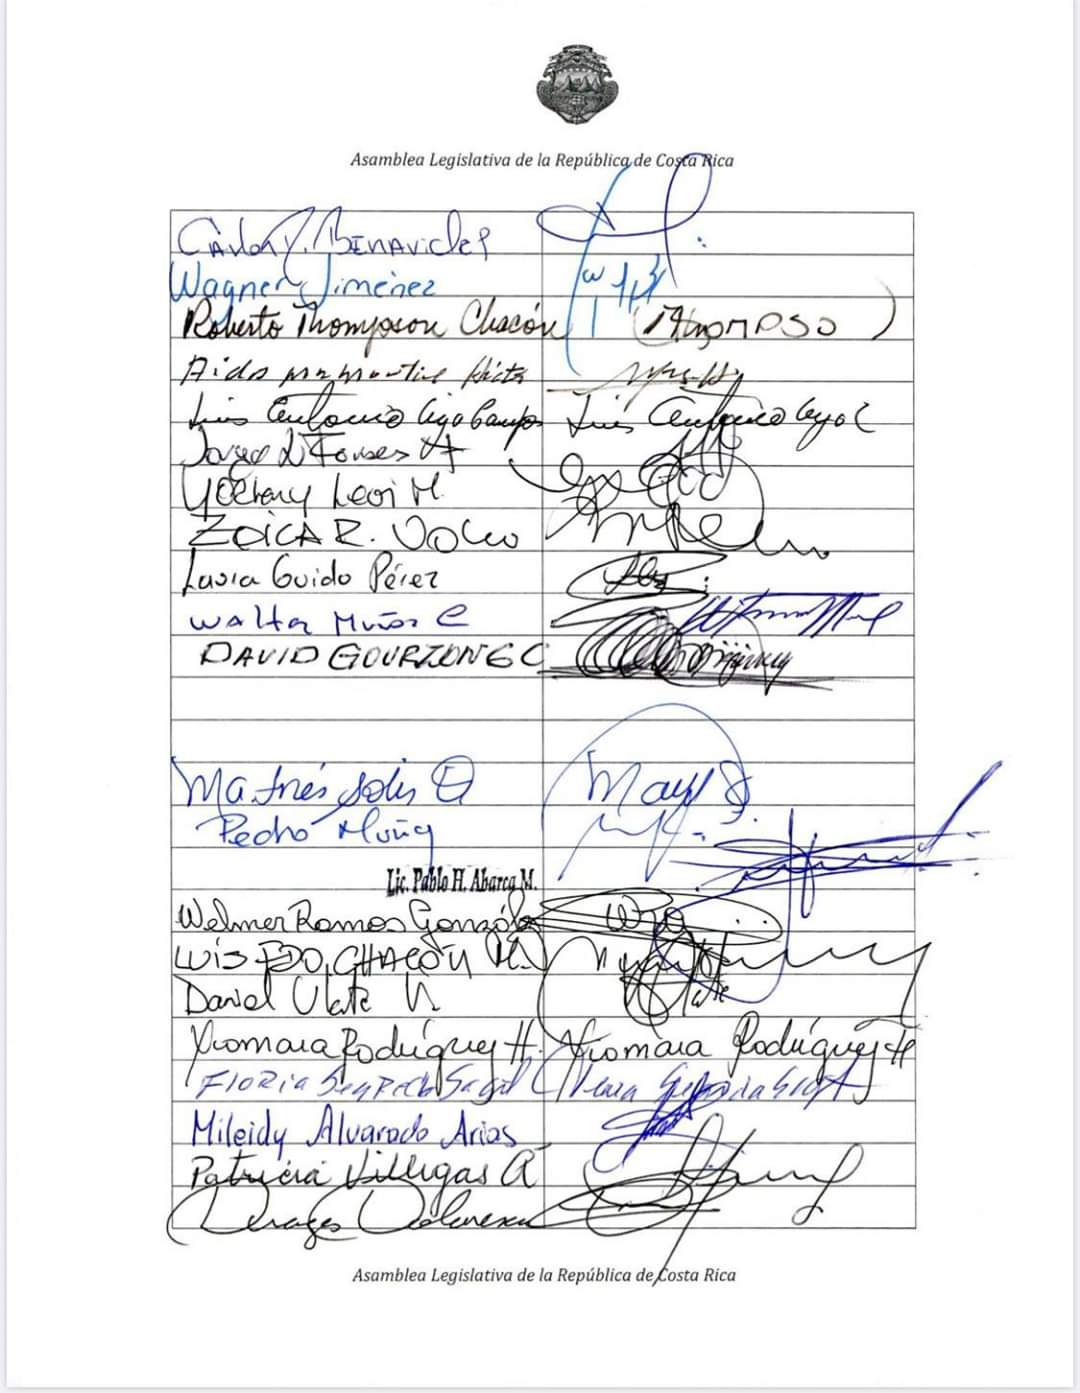 Firmas de los diputados de la Asamblea Legislativa de Costa Rica